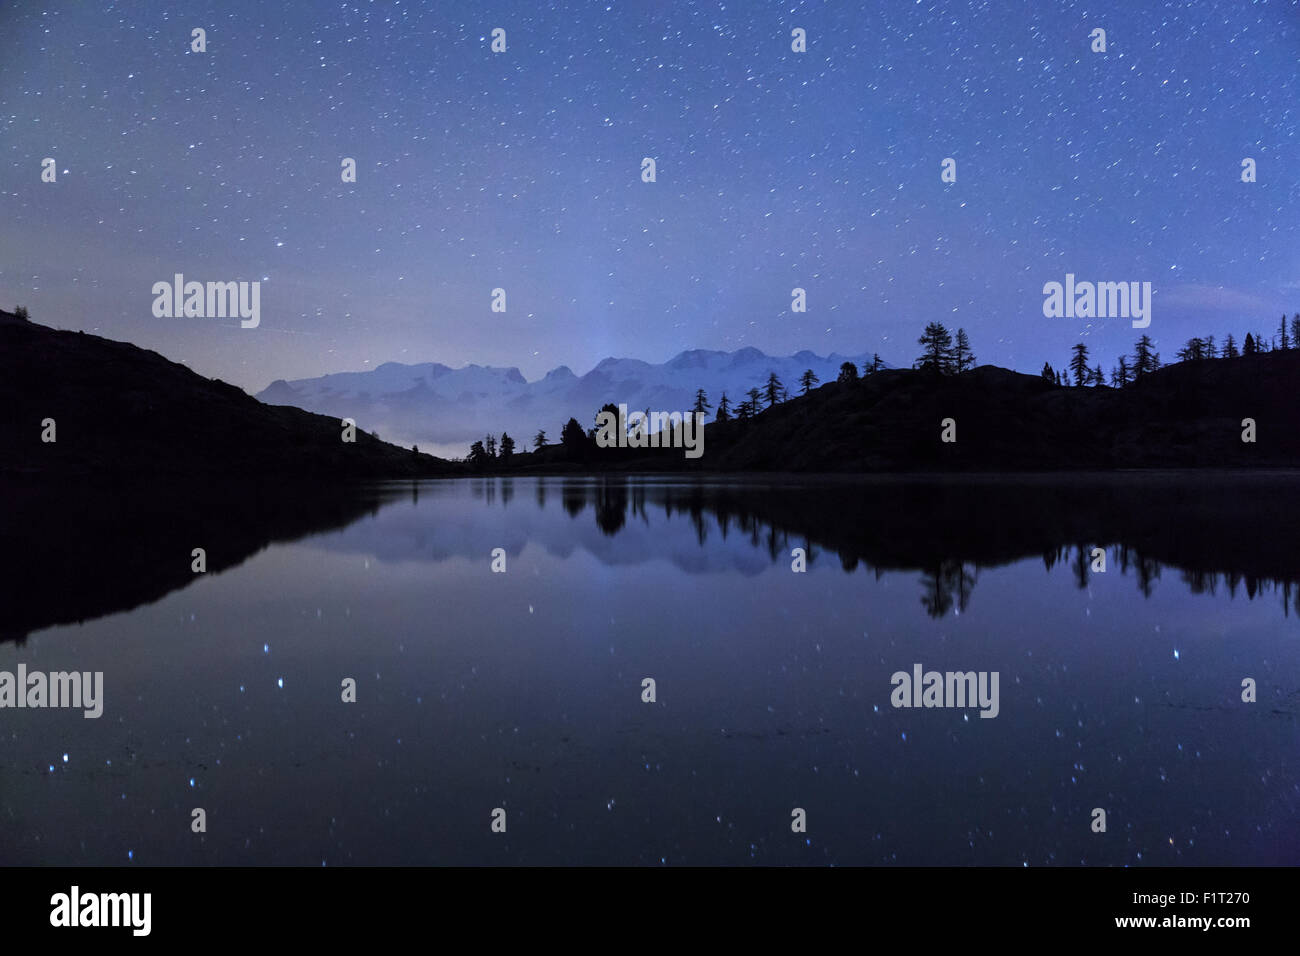 Notte stellata sul Monte Rosa visto dal lago Vallette, parco naturale del Mont Avic, Valle d'Aosta, Graian Alps, Italia, Europa Foto Stock